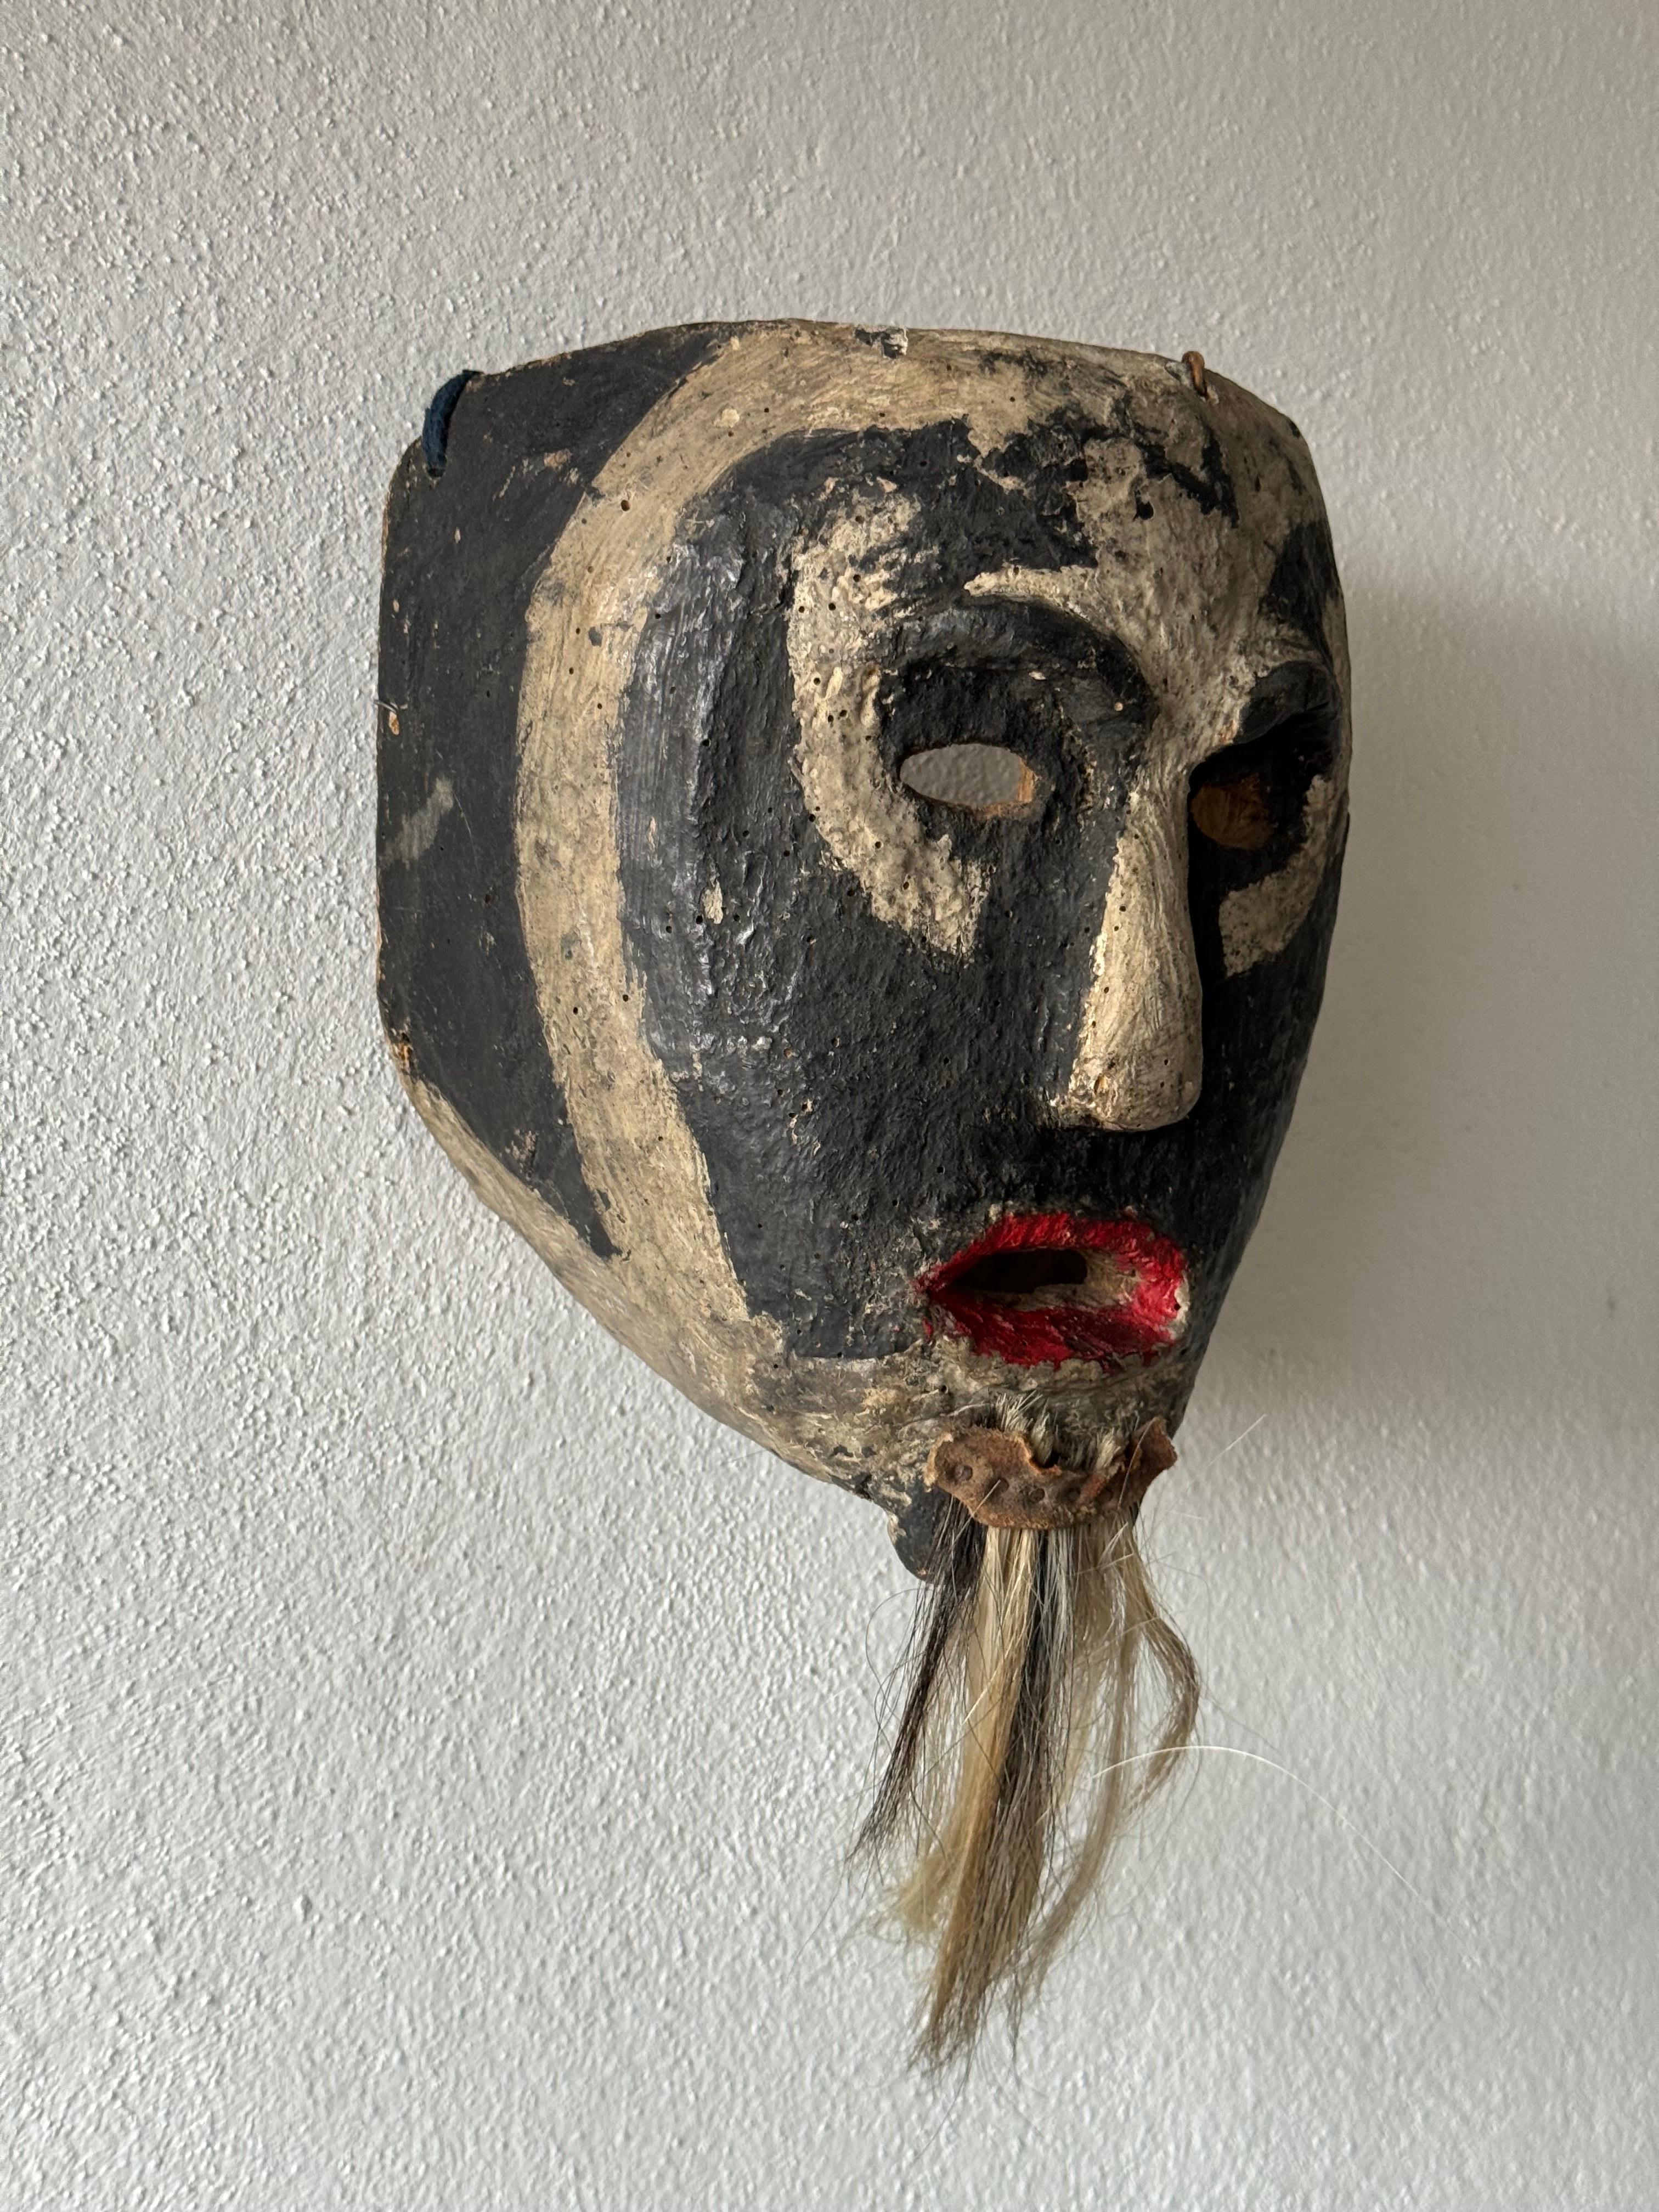 Xantolo-Maske aus der Region Huasteca in Hidalgo. Diese seltene Sammlermaske wurde Mitte der 1970er Jahre aus der Stadt Tzapotitla in der Gemeinde Huazalingo erworben.
Das Xantolo-Fest ist ein großes Fest und eine Hommage an die Lebenden und die